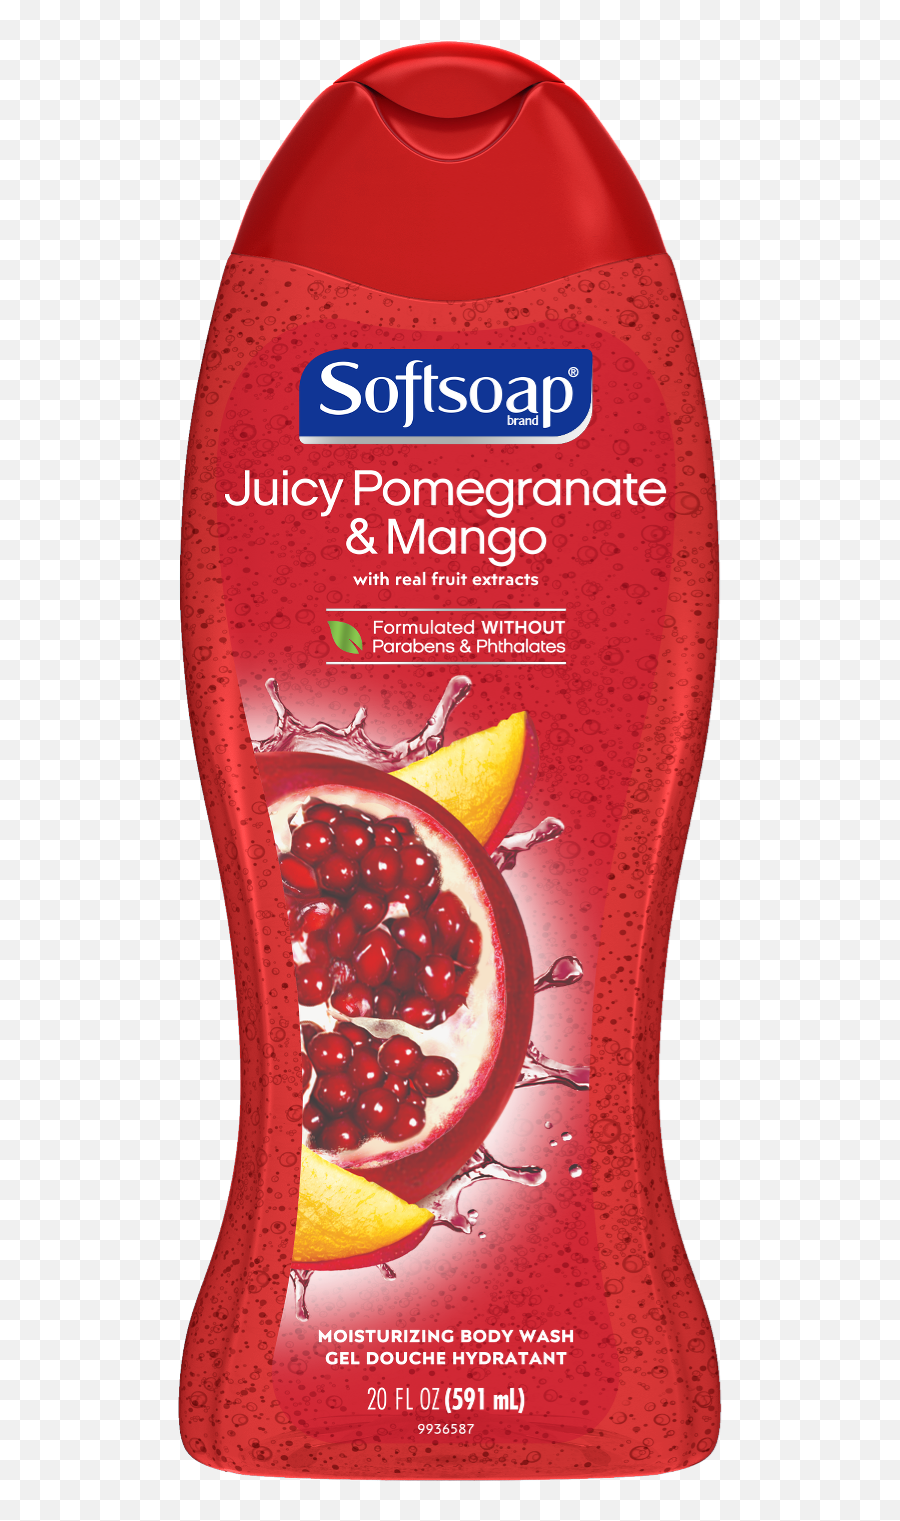 Softsoap Moisturizing Body Wash Pomegranate And Mango 20 Fl Oz Emoji,Mango Transparent